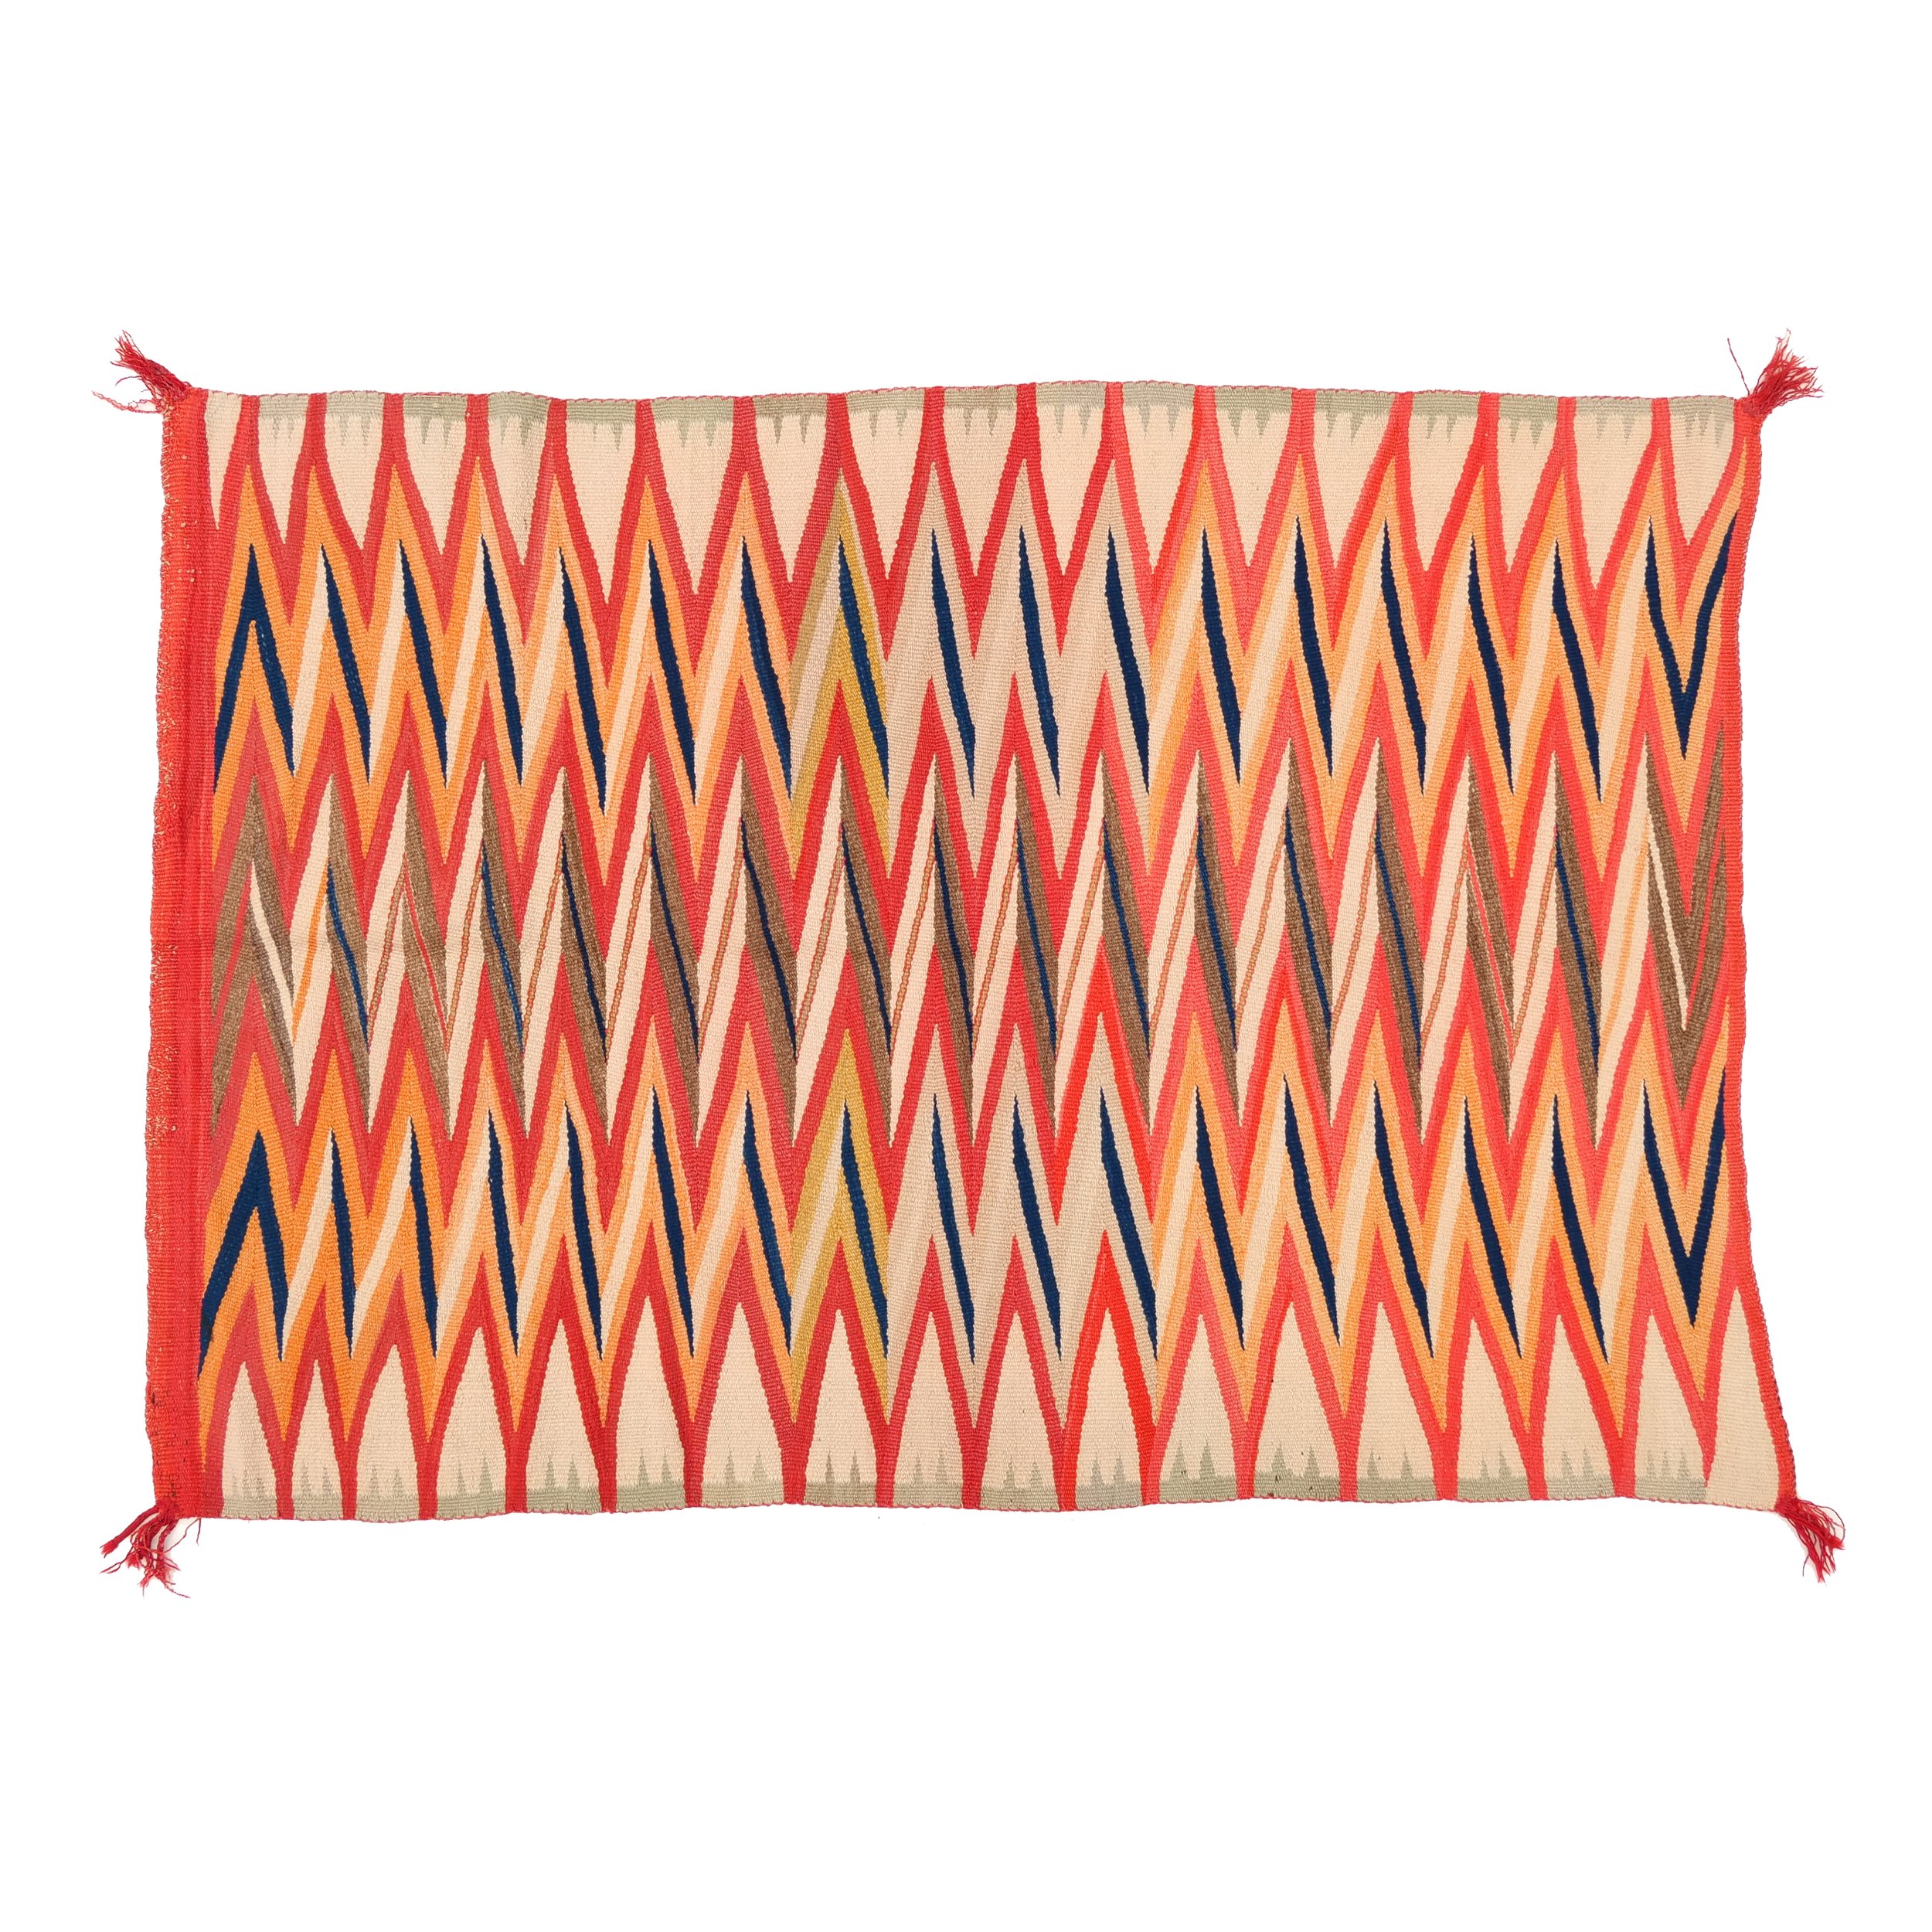 Transitional Navajo Wedge Weave Blanket/Rug